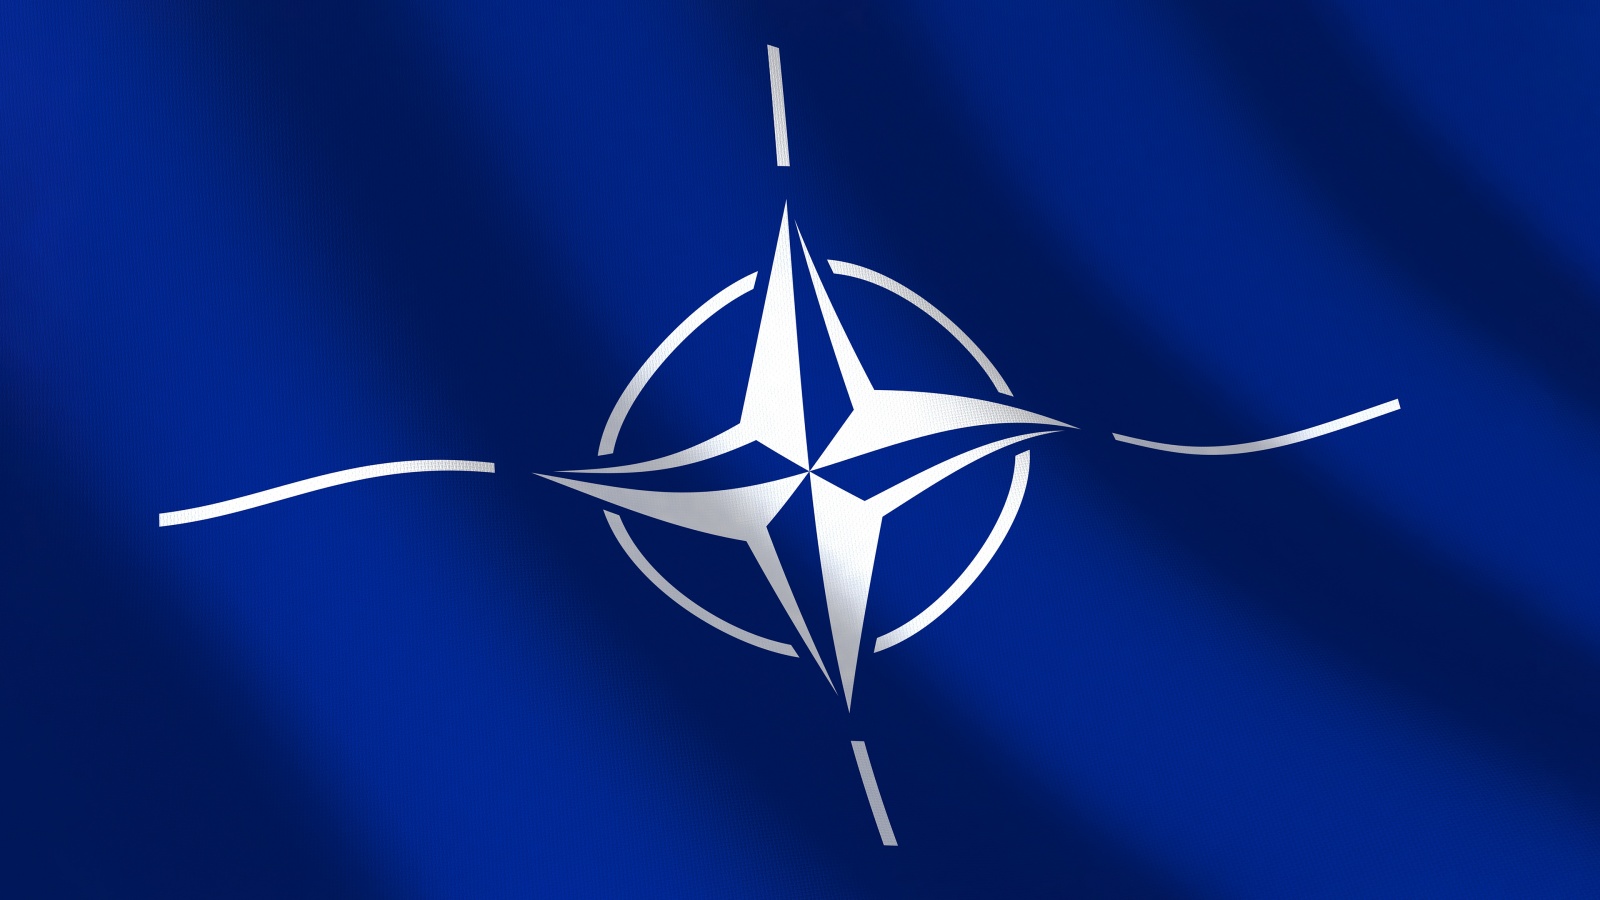 NATO Prepares the New Alliance Defense Strategic Concept